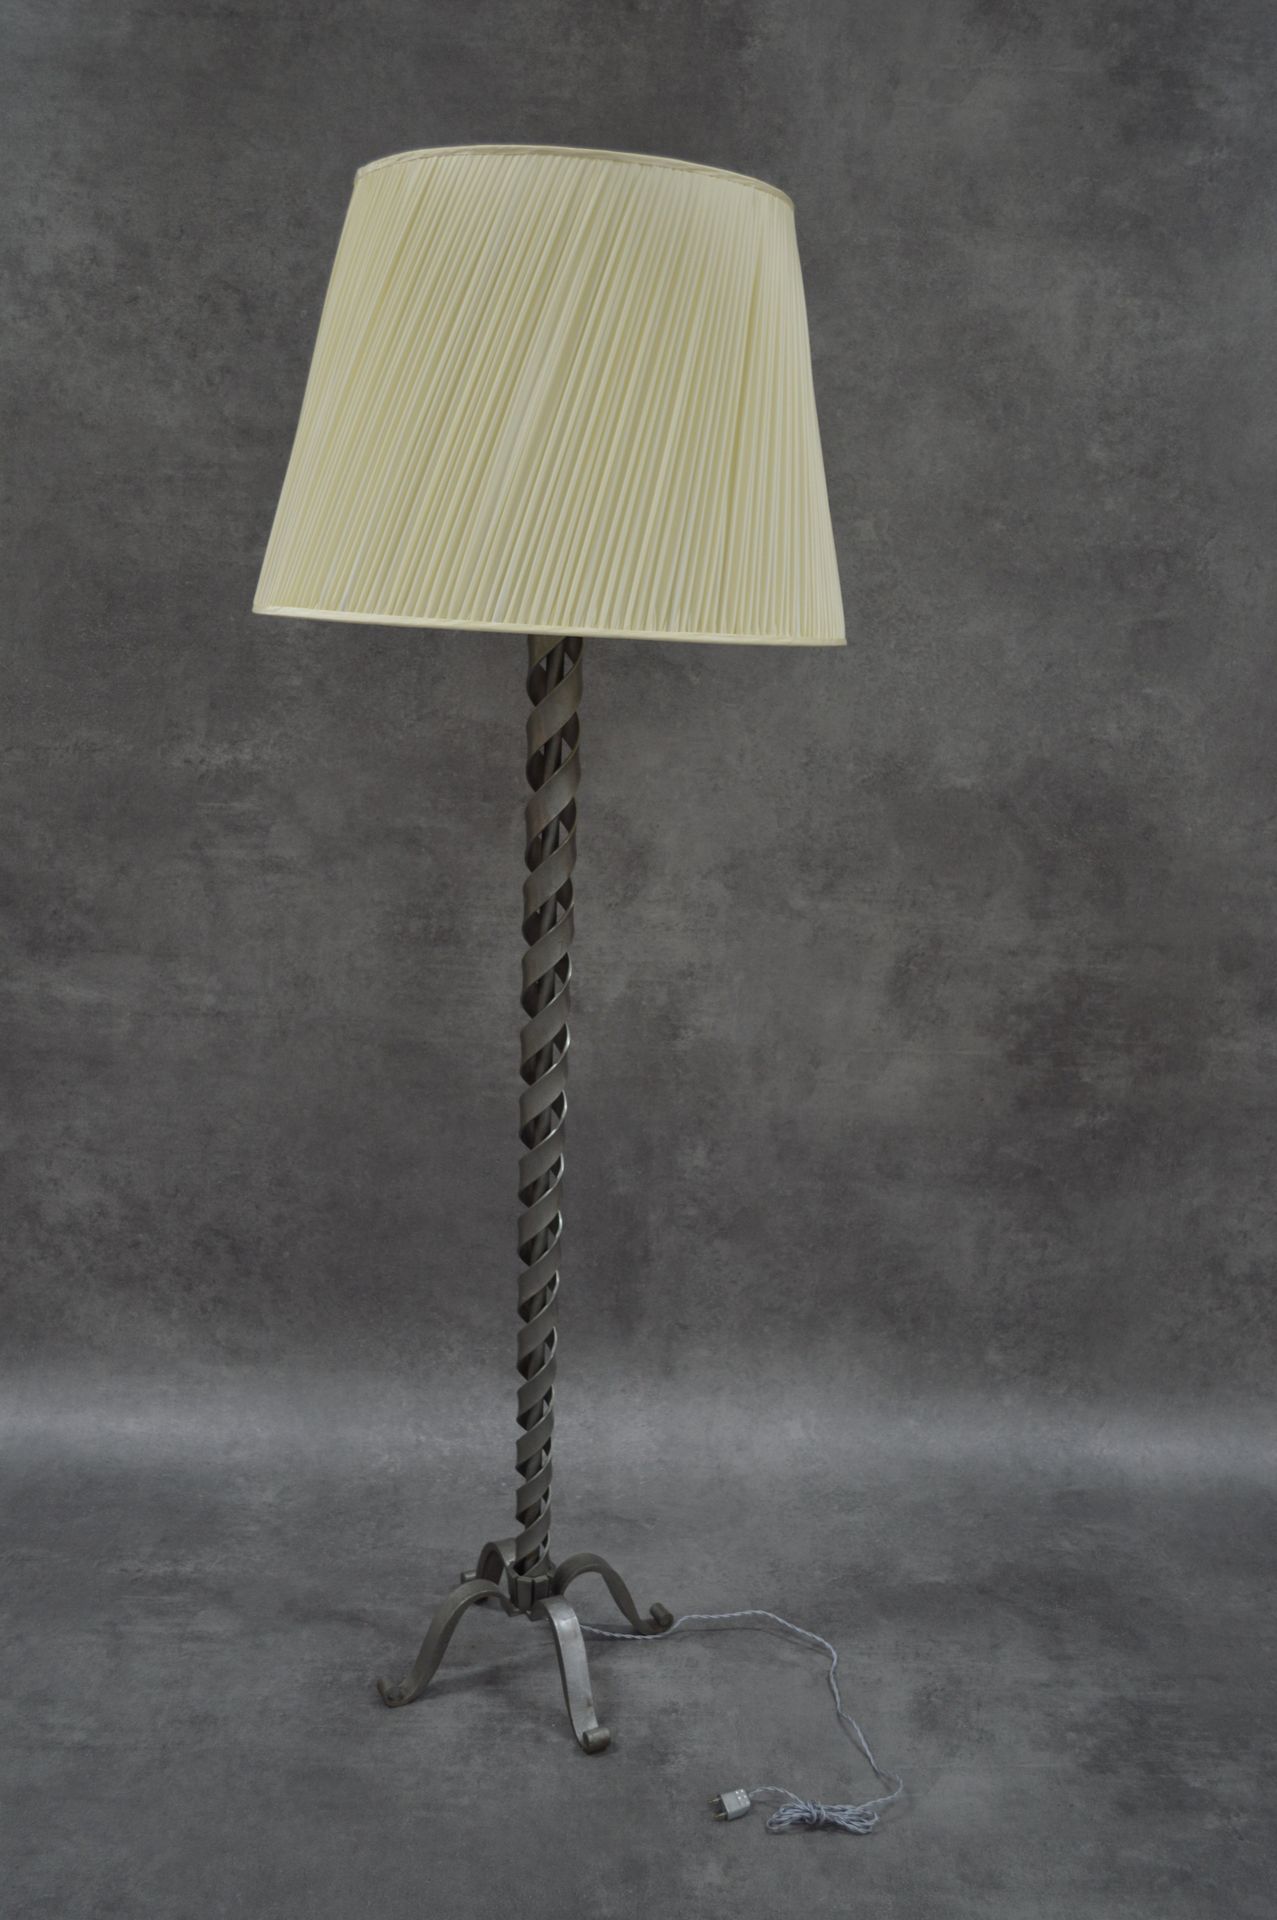 Raymond SUBES 
三脚架落地灯
雷蒙德-苏贝斯（1891-1970），归属。锻铁。
1930年。尺寸：70厘米，带日光。高度约192厘米